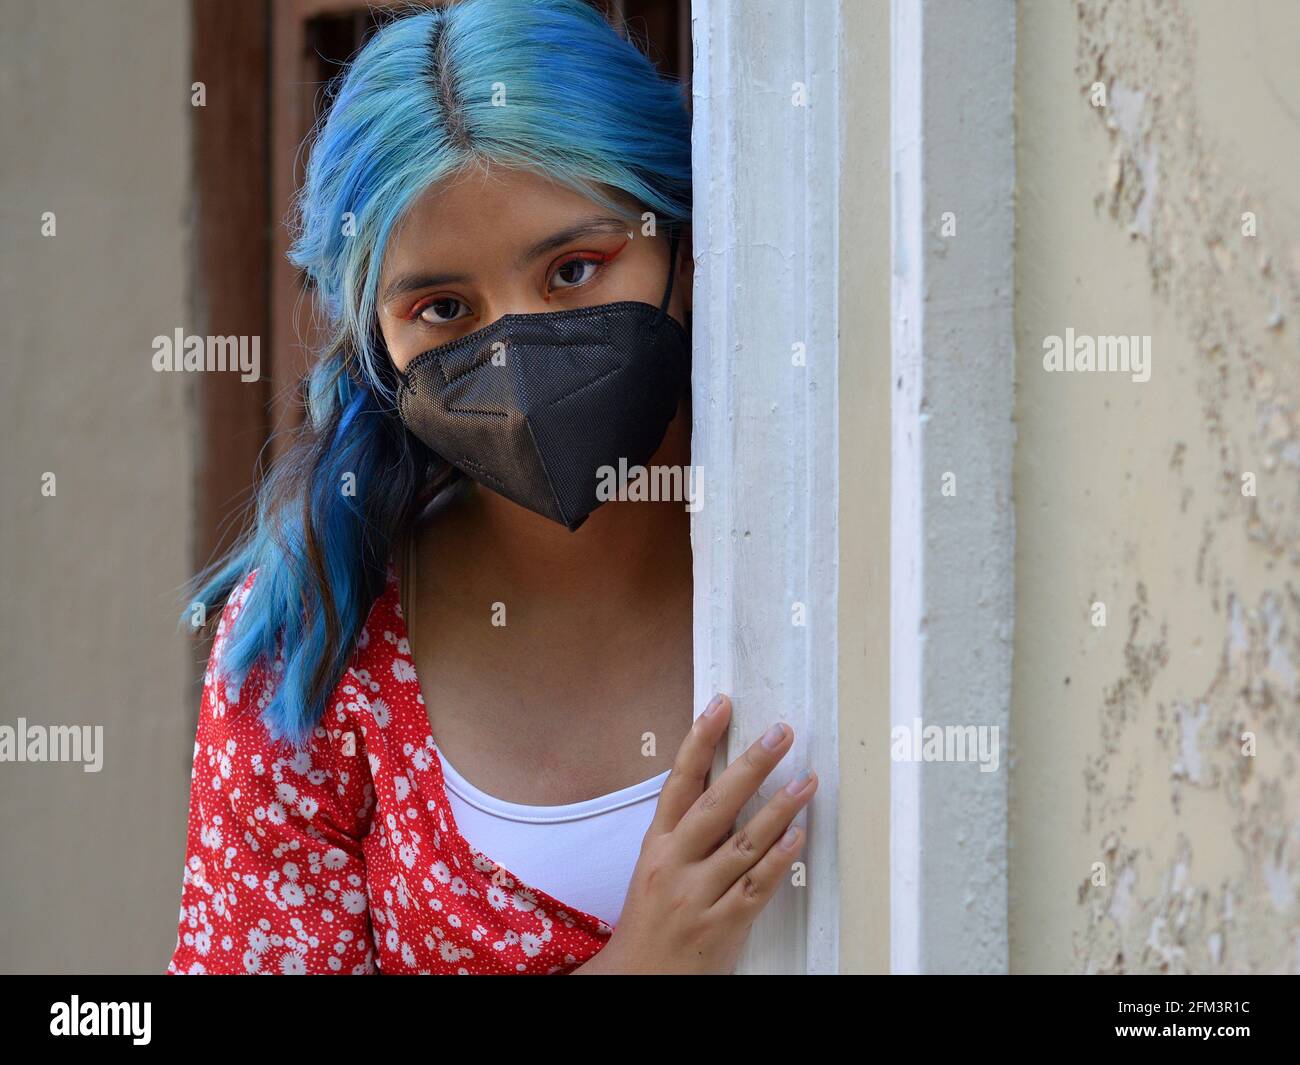 La ragazza teen di Latina caucasica con i capelli lunghi tinti blu e il make-up elaborato dell'occhio indossa una maschera nera del viso e porge intorno all'angolo di una porta d'ingresso. Foto Stock